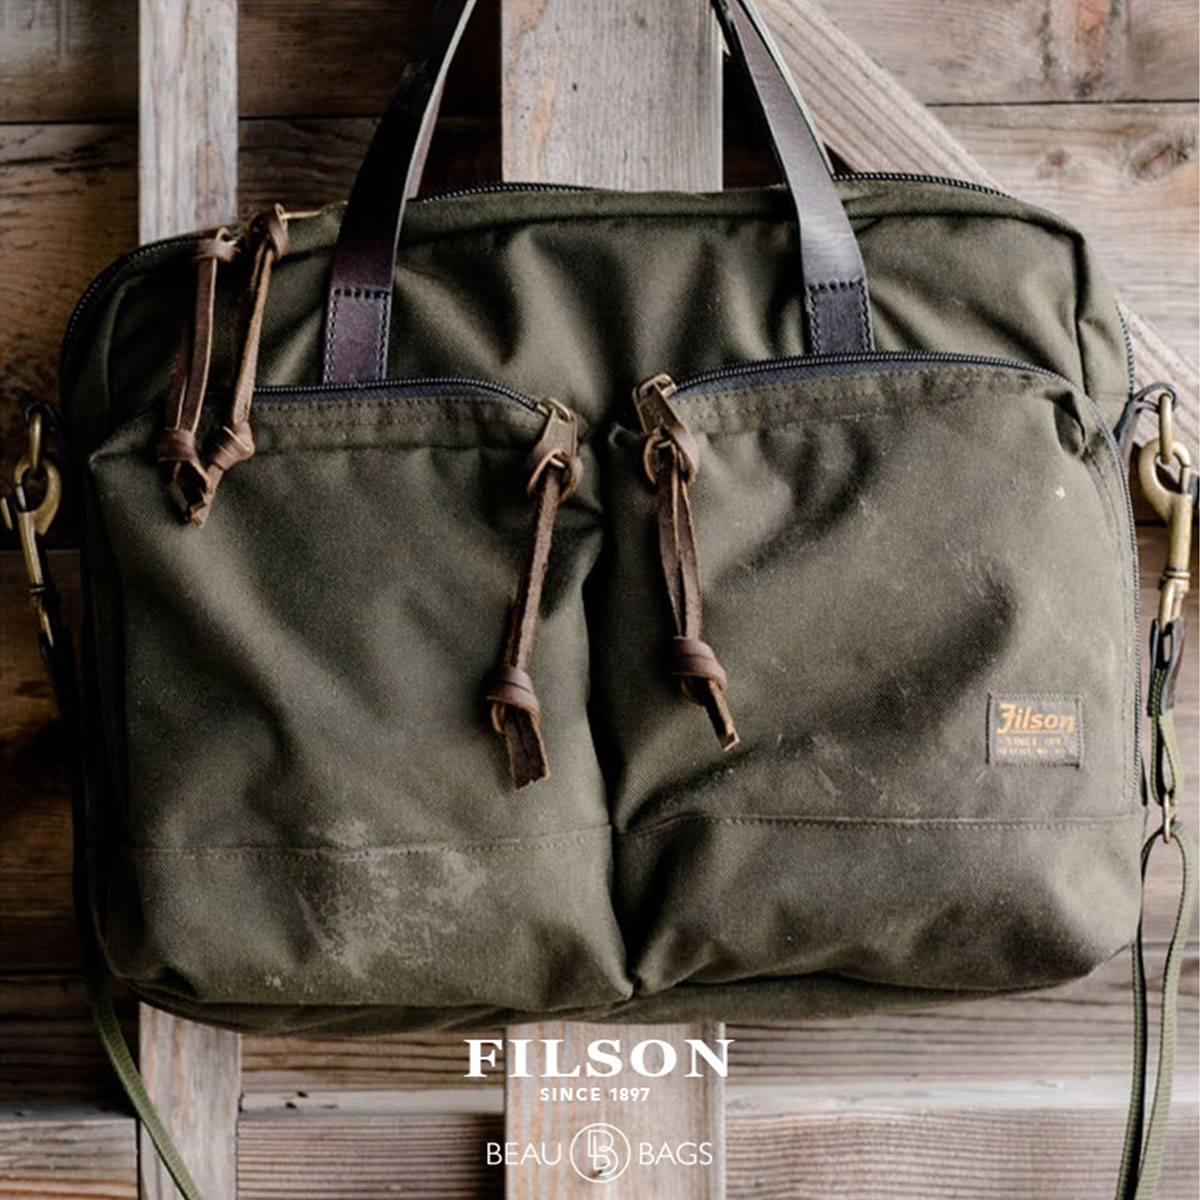 Filson Ballistic Nylon Dryden Briefcase Otter Green, vielseitige Aktentasche für den harten Einsatz